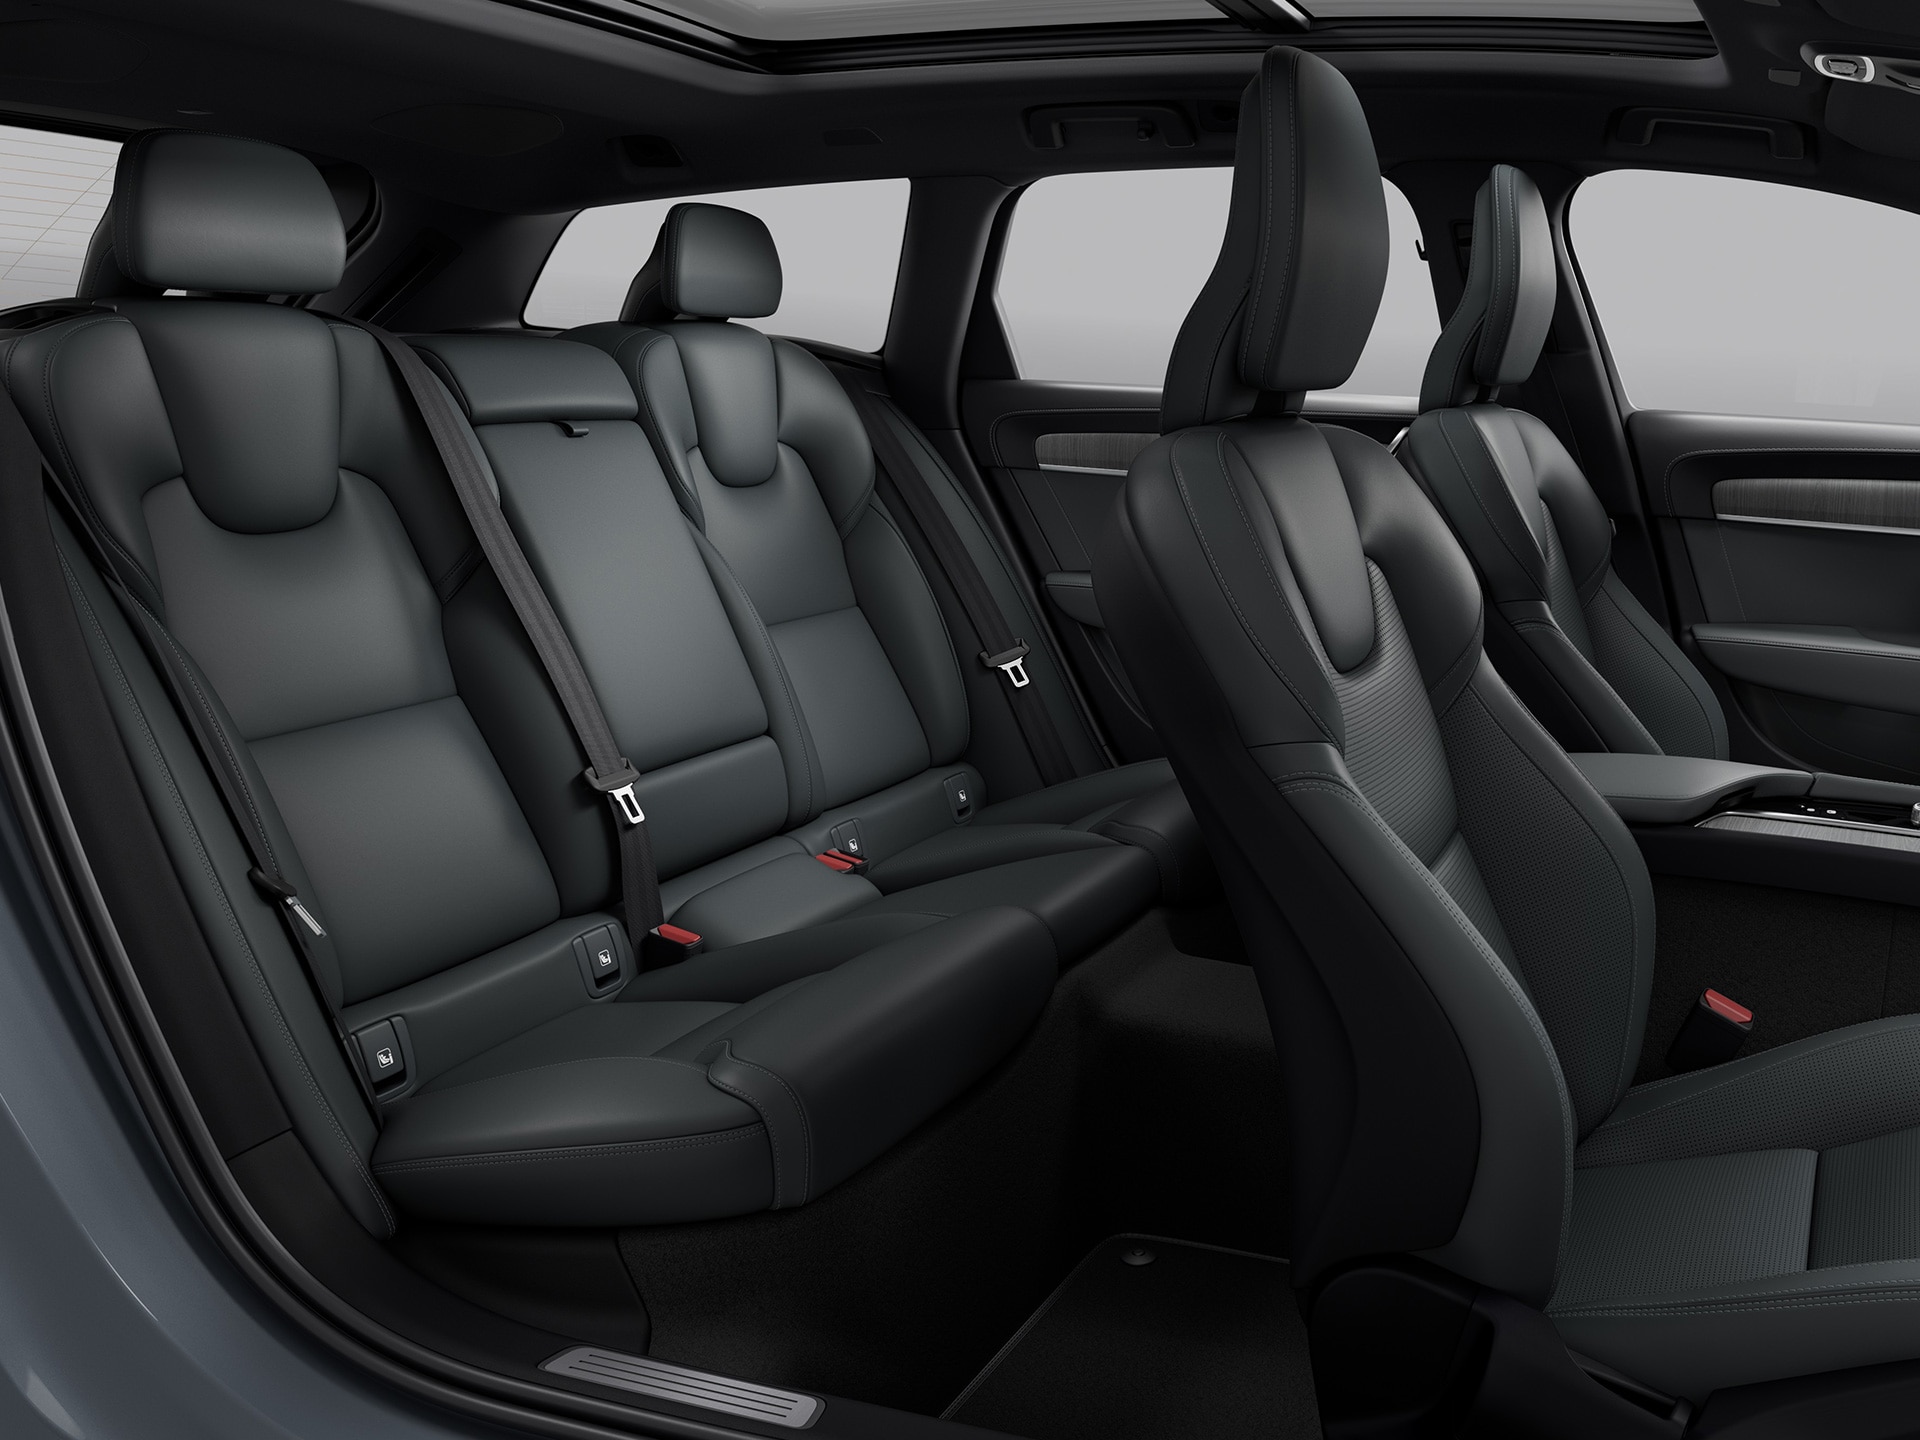 Praktické uspořádání sedadel a zavazadlového prostoru v kombinaci s prostorným designem vozu Volvo V90 Cross Country.